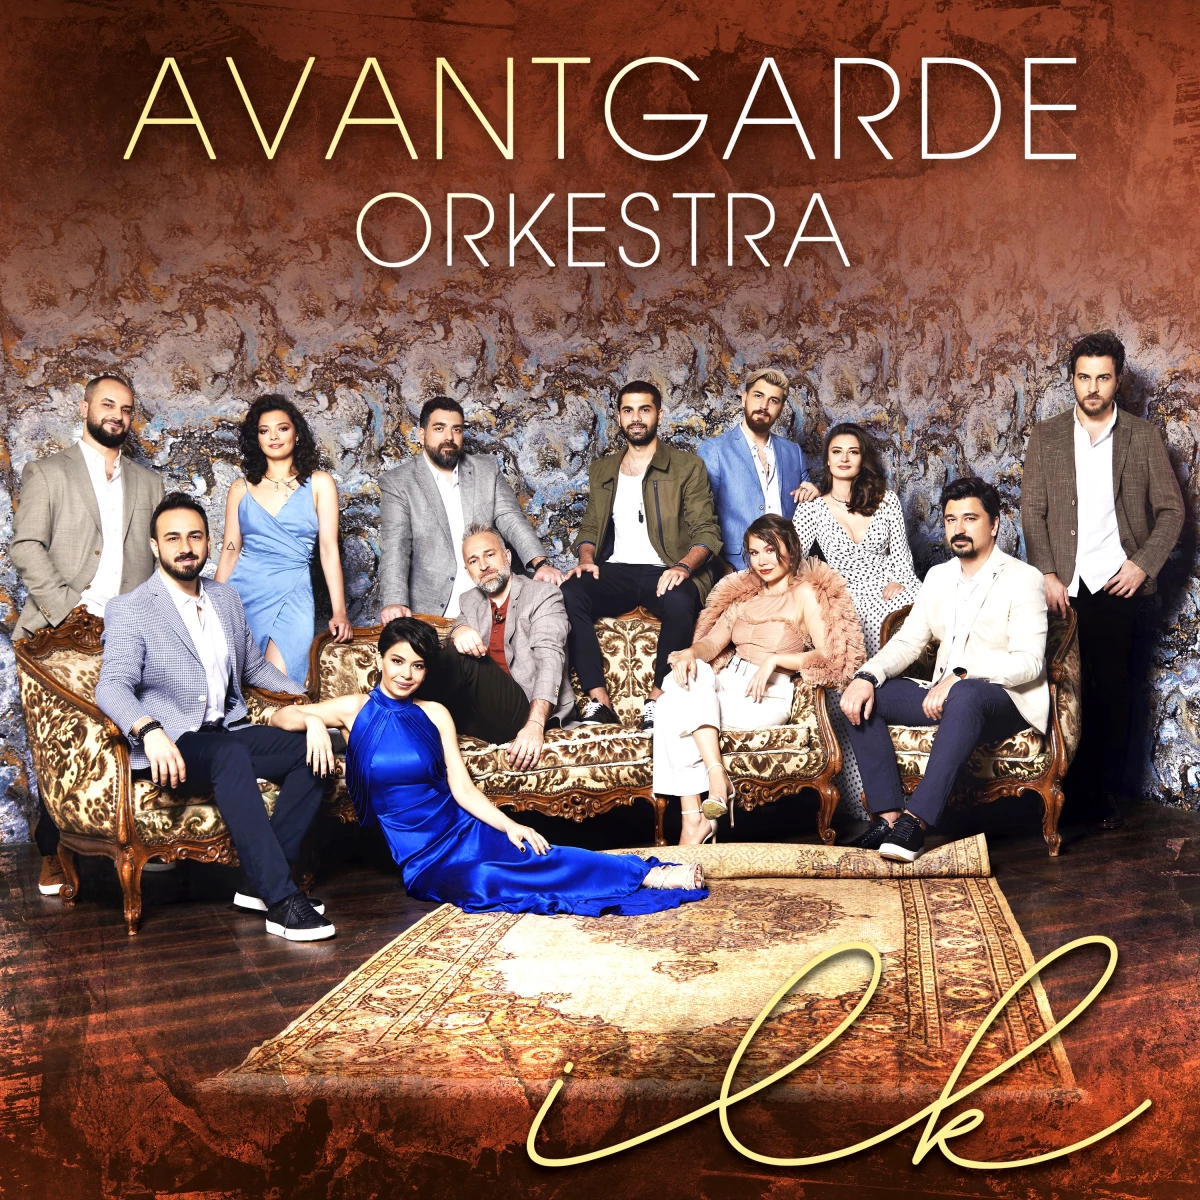 Avantgarde orkestra "İLK" albümü yayınlandı